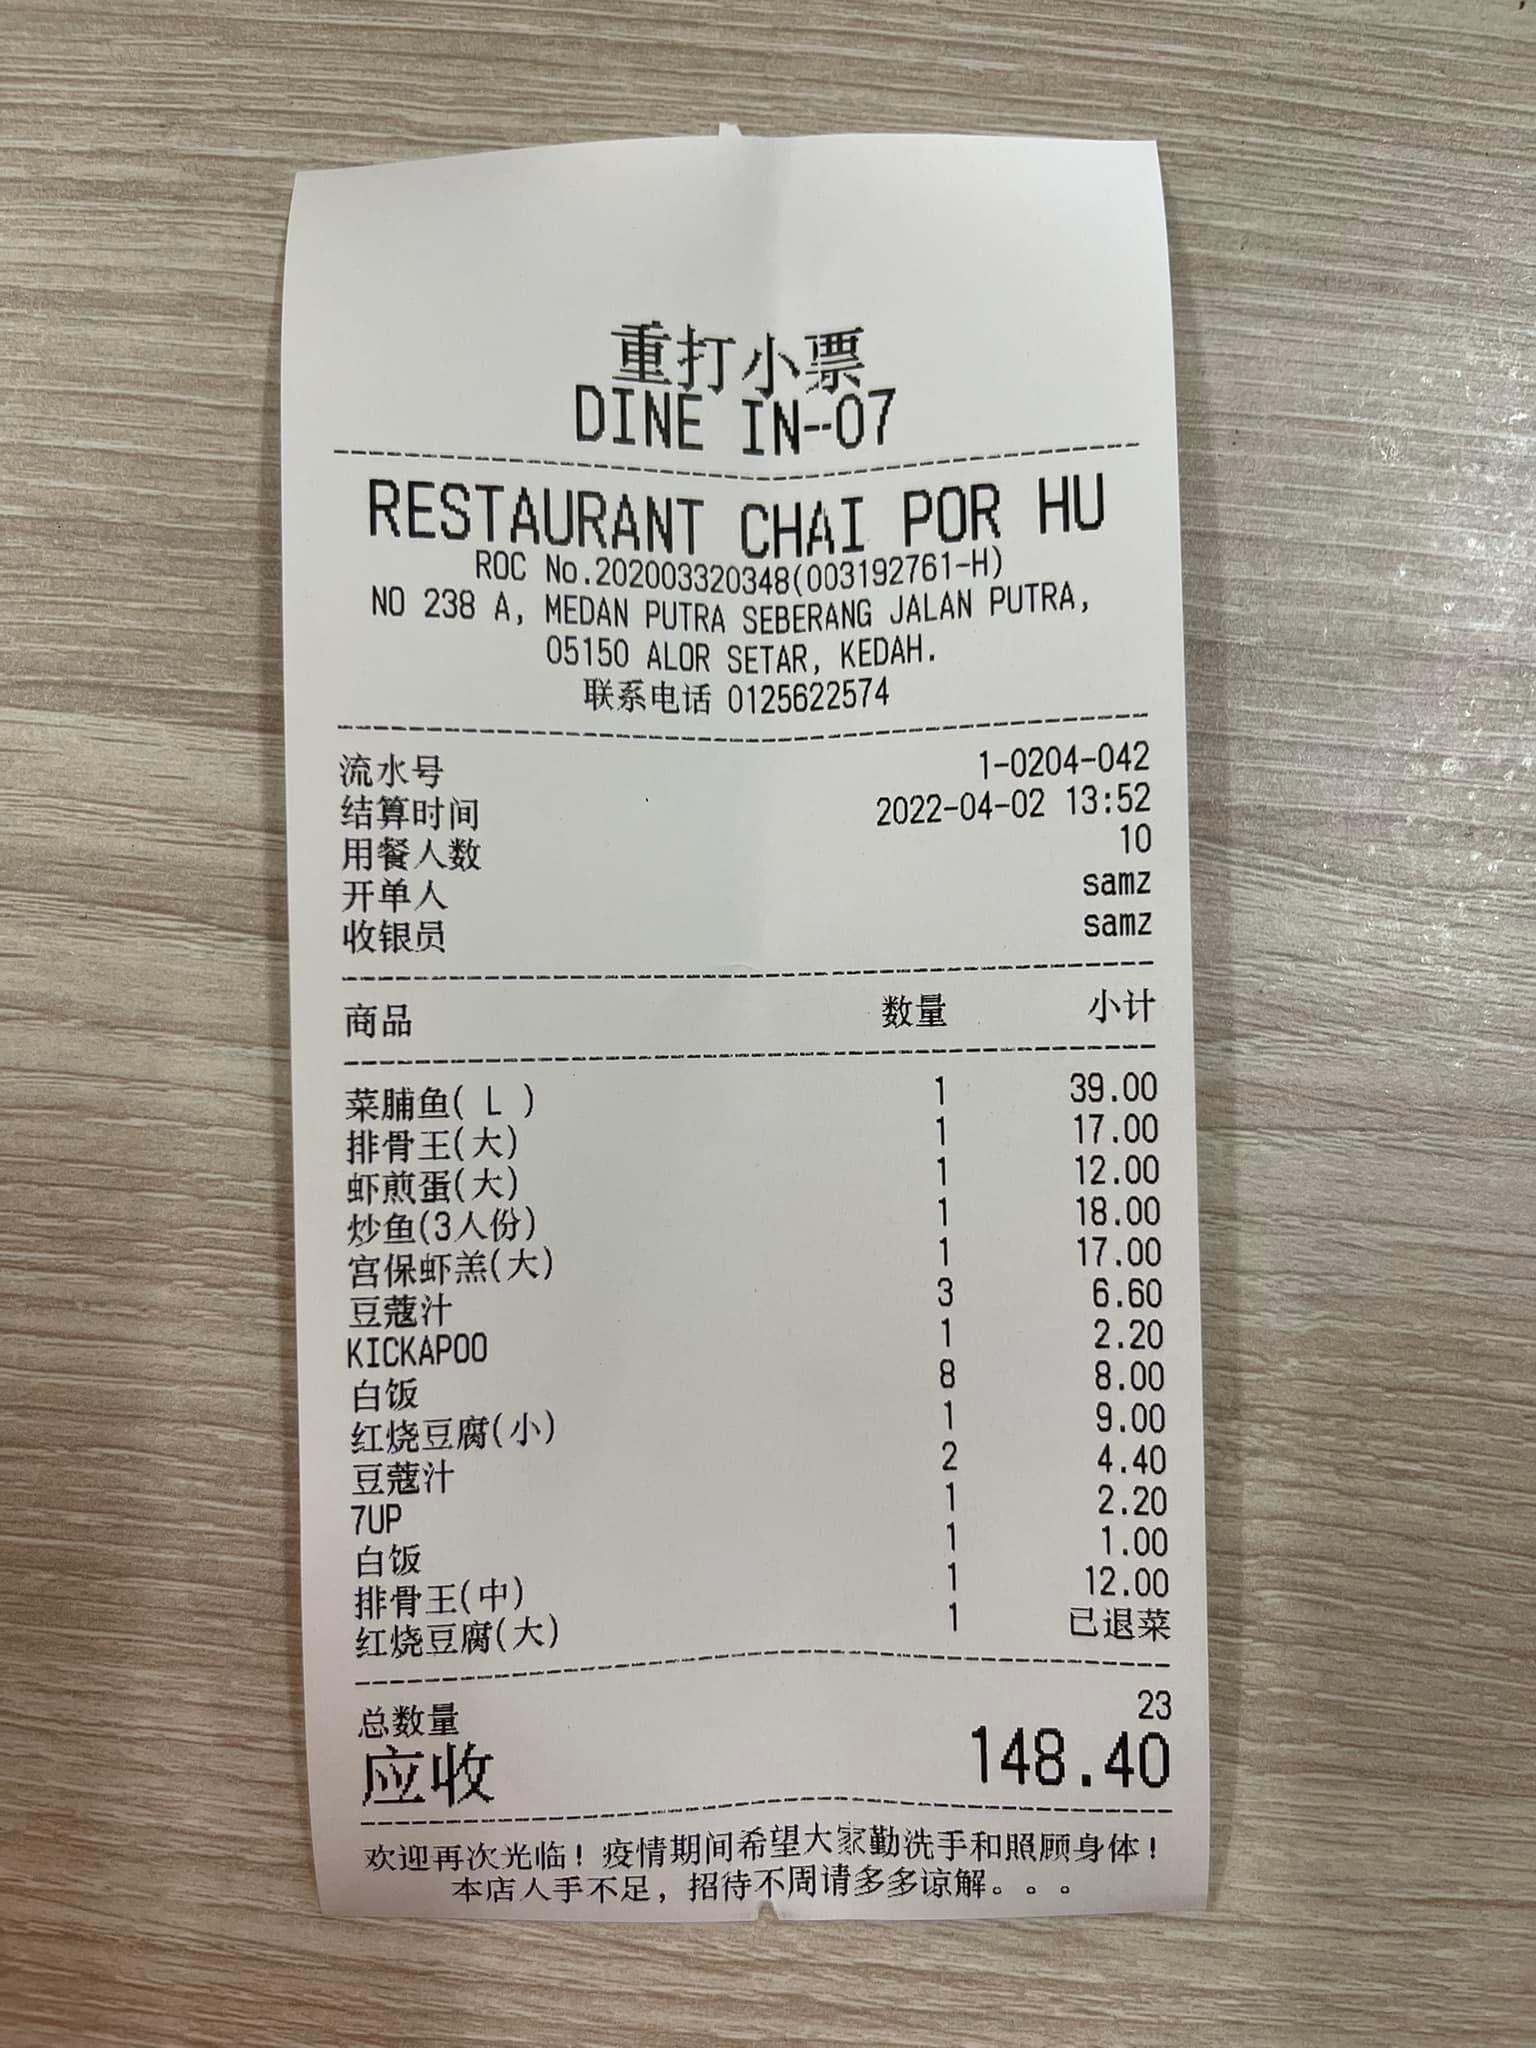 （大北马）9人吃一餐148令吉，顾客喊贵；业者脸书贴出收据，指物价高涨，但店内菜单维持原价，请大家评评理。